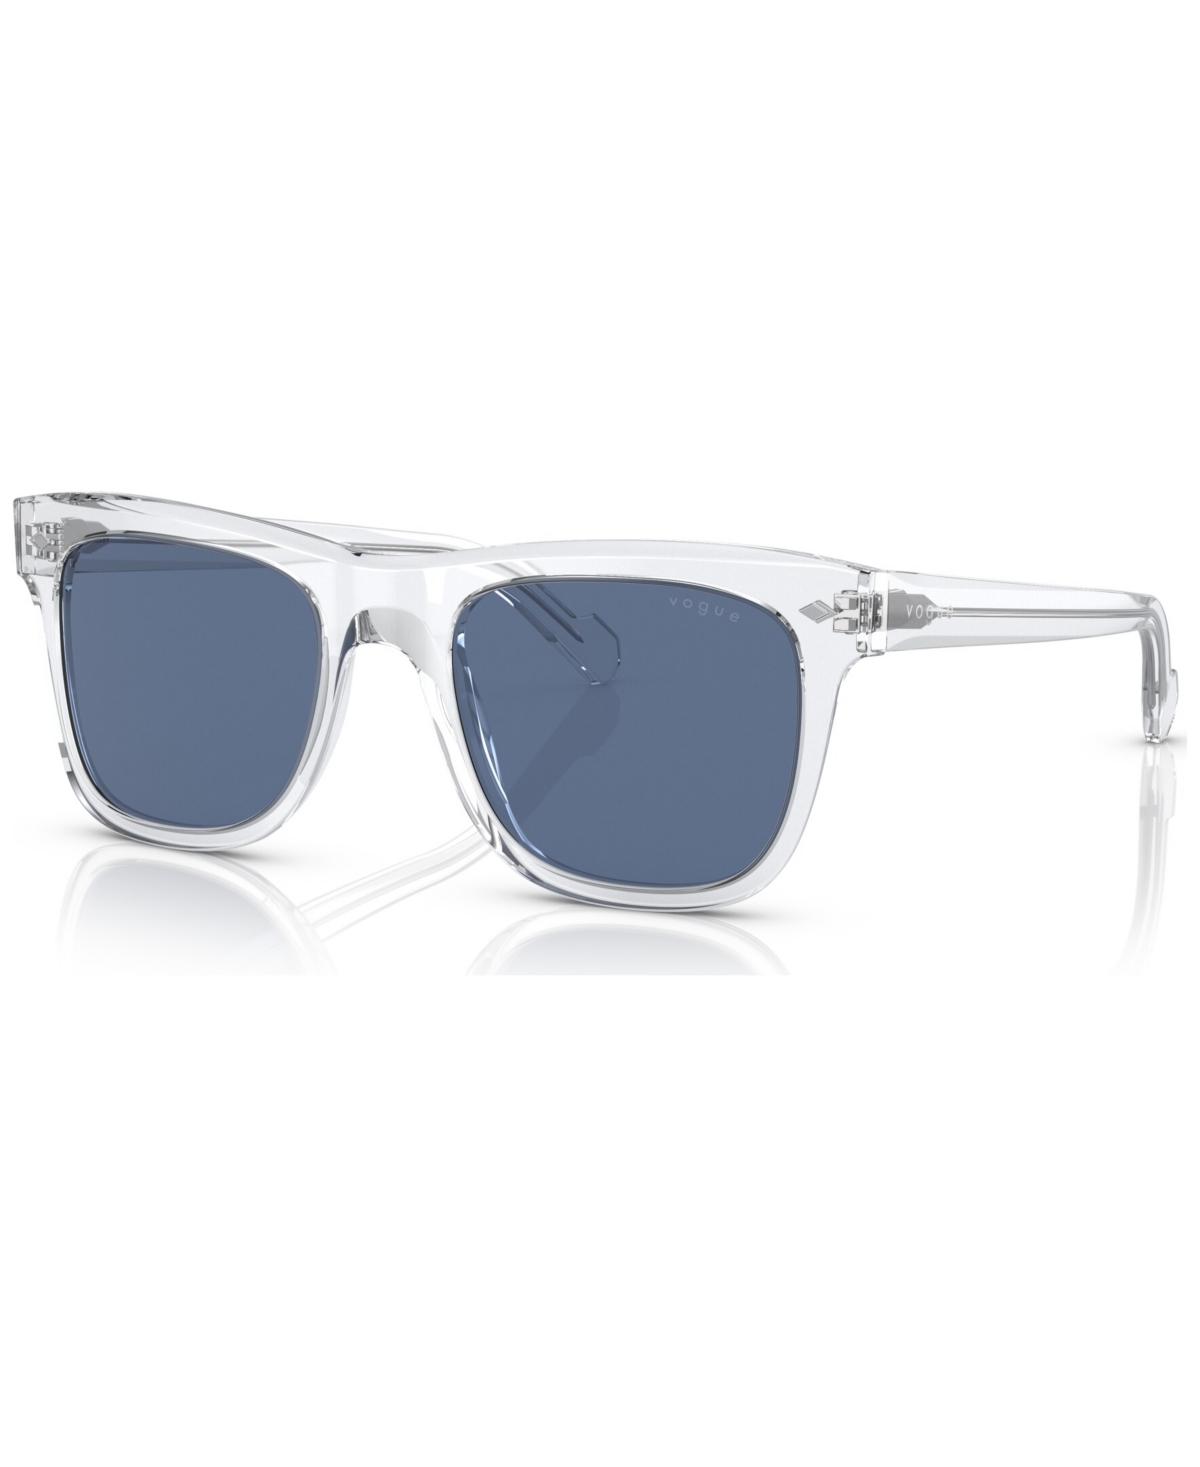 Men's Sunglasses, VO5465S - Transparent